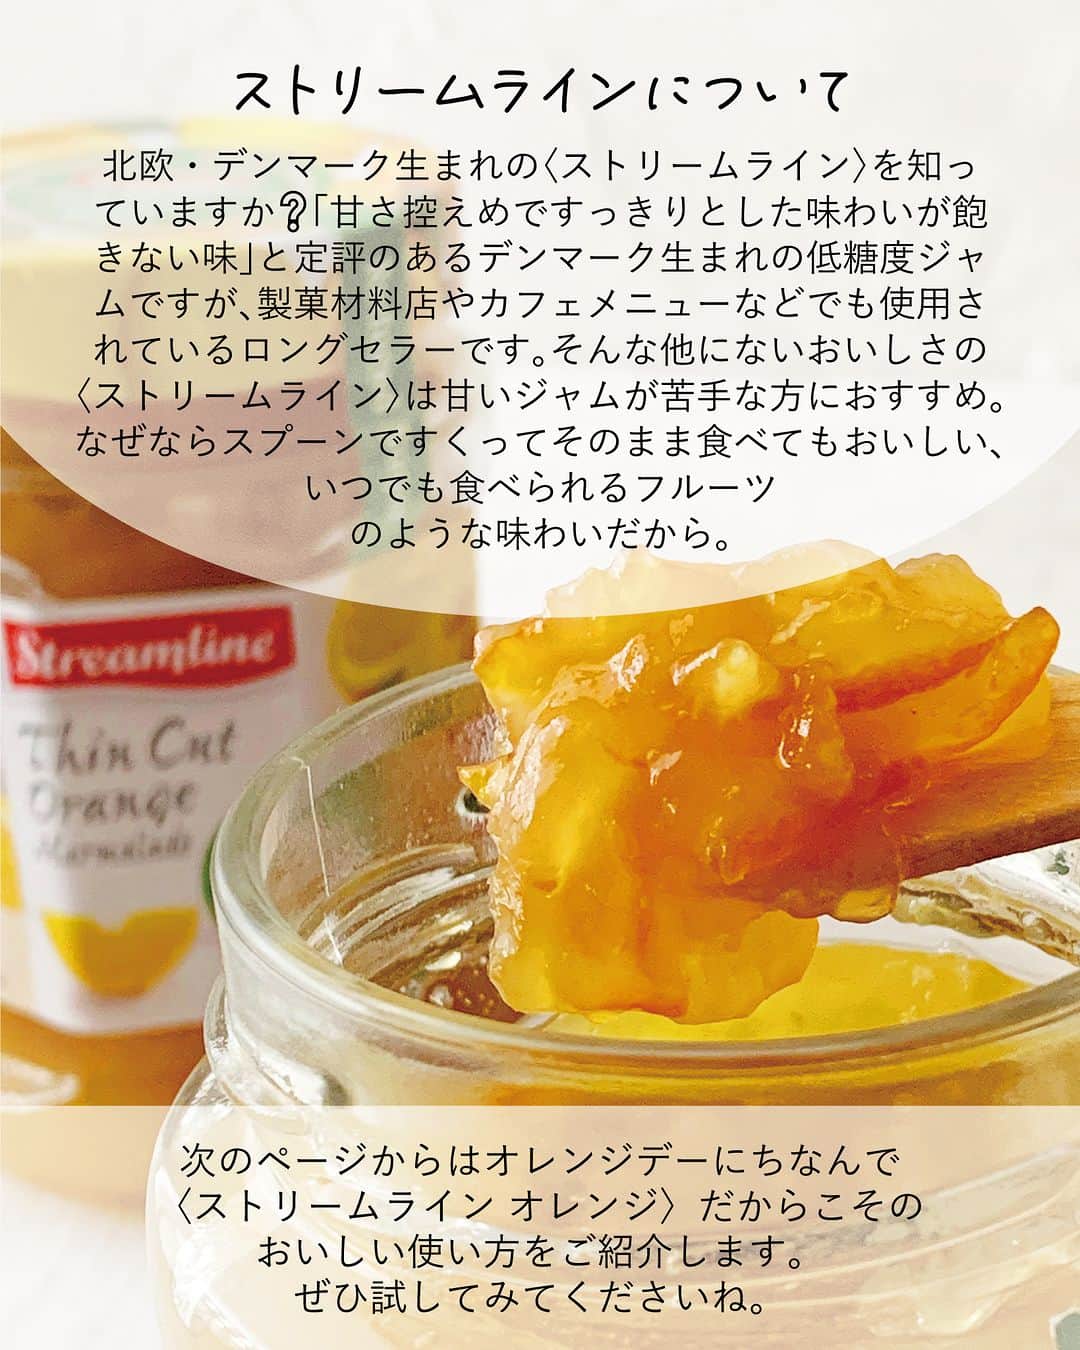 キタノ商事株式会社さんのインスタグラム写真 - (キタノ商事株式会社Instagram)「食べてみたい！と思ったらコメント欄に「🍊」作ってみたい！と思ったら「🌼」で教えていただけると嬉しいです♡  🍊オレンジのレシピ🌼 🇩🇰ストリームライン[オレンジ] 今日はオレンジデー🍊なのをご存知ですか？ ヨーロッパでは愛と豊穣、繁栄のシンボルとされているオレンジ。オレンジには「花嫁の喜び」などの花言葉がある他、オレンジの木は花と実を同時につけることから、オレンジの花冠を花嫁が身に着けてきた歴史があります。🌼🍊🌼🍊🌼🍊  バレンタイン、ホワイトデーに続く、第三の愛の記念日ともいわれているオレンジデーはオレンジやオレンジのものを贈り合う日。こんな日はオレンジのスイーツを大切な方といただくのはいかがですか。  北欧🇩🇰デンマーク生まれのストリームラインはお菓子作りにもお料理にも大活躍する、すっきりとした味わいの低糖度ジャム。ストリームラインで作るオレンジデーにぴったりなレシピを掲載していますのでぜひお試しください。  🍊 ＼食べてみたらぜひ教えてください／ 素敵な投稿をこちらのアカウントではご紹介させていただいております。 @kitano_kk と  #ストリームラインジャム のタグをつけて投稿してみてくださいね。ストーリーズでもフィードでもどちらでも🙆です♡みなさまの投稿をお待ちしております。  🍊 【販売店情報】 「ヨドバシ.com」にて🇩🇰ストリームライン[オレンジ]をお取り扱いいただいております。「ストリームライン」でチェックしてみてくださいね。 https://www.yodobashi.com/ ※在庫状況は変動するため、在庫がない場合もございます。予めご了承ください。  🍊 【プレゼントキャンペーン】 こちらのジャムでアレンジしてみたい方へ【ストリームライン】のジャムセットが当たるプレゼントキャンペーンを開催中です。応募は本日4月14日(金)23：59まで。詳細は3/17(金)のキャンペーン投稿をご覧ください。  🍊 -------------- 🇩🇰ストリームライン 北欧・デンマーク生まれの低糖度ジャム[ストリームライン]は、甘さ控えめですっきりとした味わい。味の秘密は、一番美味しい時期に収穫したフルーツと、てんさい糖を使用していること。後味まですっきりとした味わいで飽きずに食べられる長期保存のきくフルーツのようなジャムですが、着色料も保存料も使用していません。糖度45度なのでカロリーも控えめ。お料理やお菓子作りなど、どんなものにも使いやすい、すっきりとした控えめな甘さが他にはないストリームラインの魅力です。 -------------- 🍊  ストリームラインのレシピはハイライトの「ストリームラインのアレンジレシピ」から投稿にジャンプいただくか、プロフィールのリンクにある当社ウェブサイト内「アレンジレシピ」でもご覧いただけます。  #ストリームライン #ストリームラインジャム #オレンジ #ジャム #デンマーク #低糖度ジャム #キタノ商事 #世界のおいしさをキタノから ・ ・ ・ ・ ・ #輸入食品 #オレンジデー #ベイクドチーズケーキ #チーズケーキ #キャロットラペ #フルーツ #プレゼントキャンペーン #おうちカフェ #おうちごはん #レシピあり #お菓子作り #キャンペーン #手作りお菓子 #おやつ #お菓子レシピ #プレゼント企画実施中 #wp_deli_japan #お菓子作り好きな人と繋がりたい #お菓子作り初心者 #手作りスイーツ #豊かな食卓」4月14日 8時00分 - kitano_kk